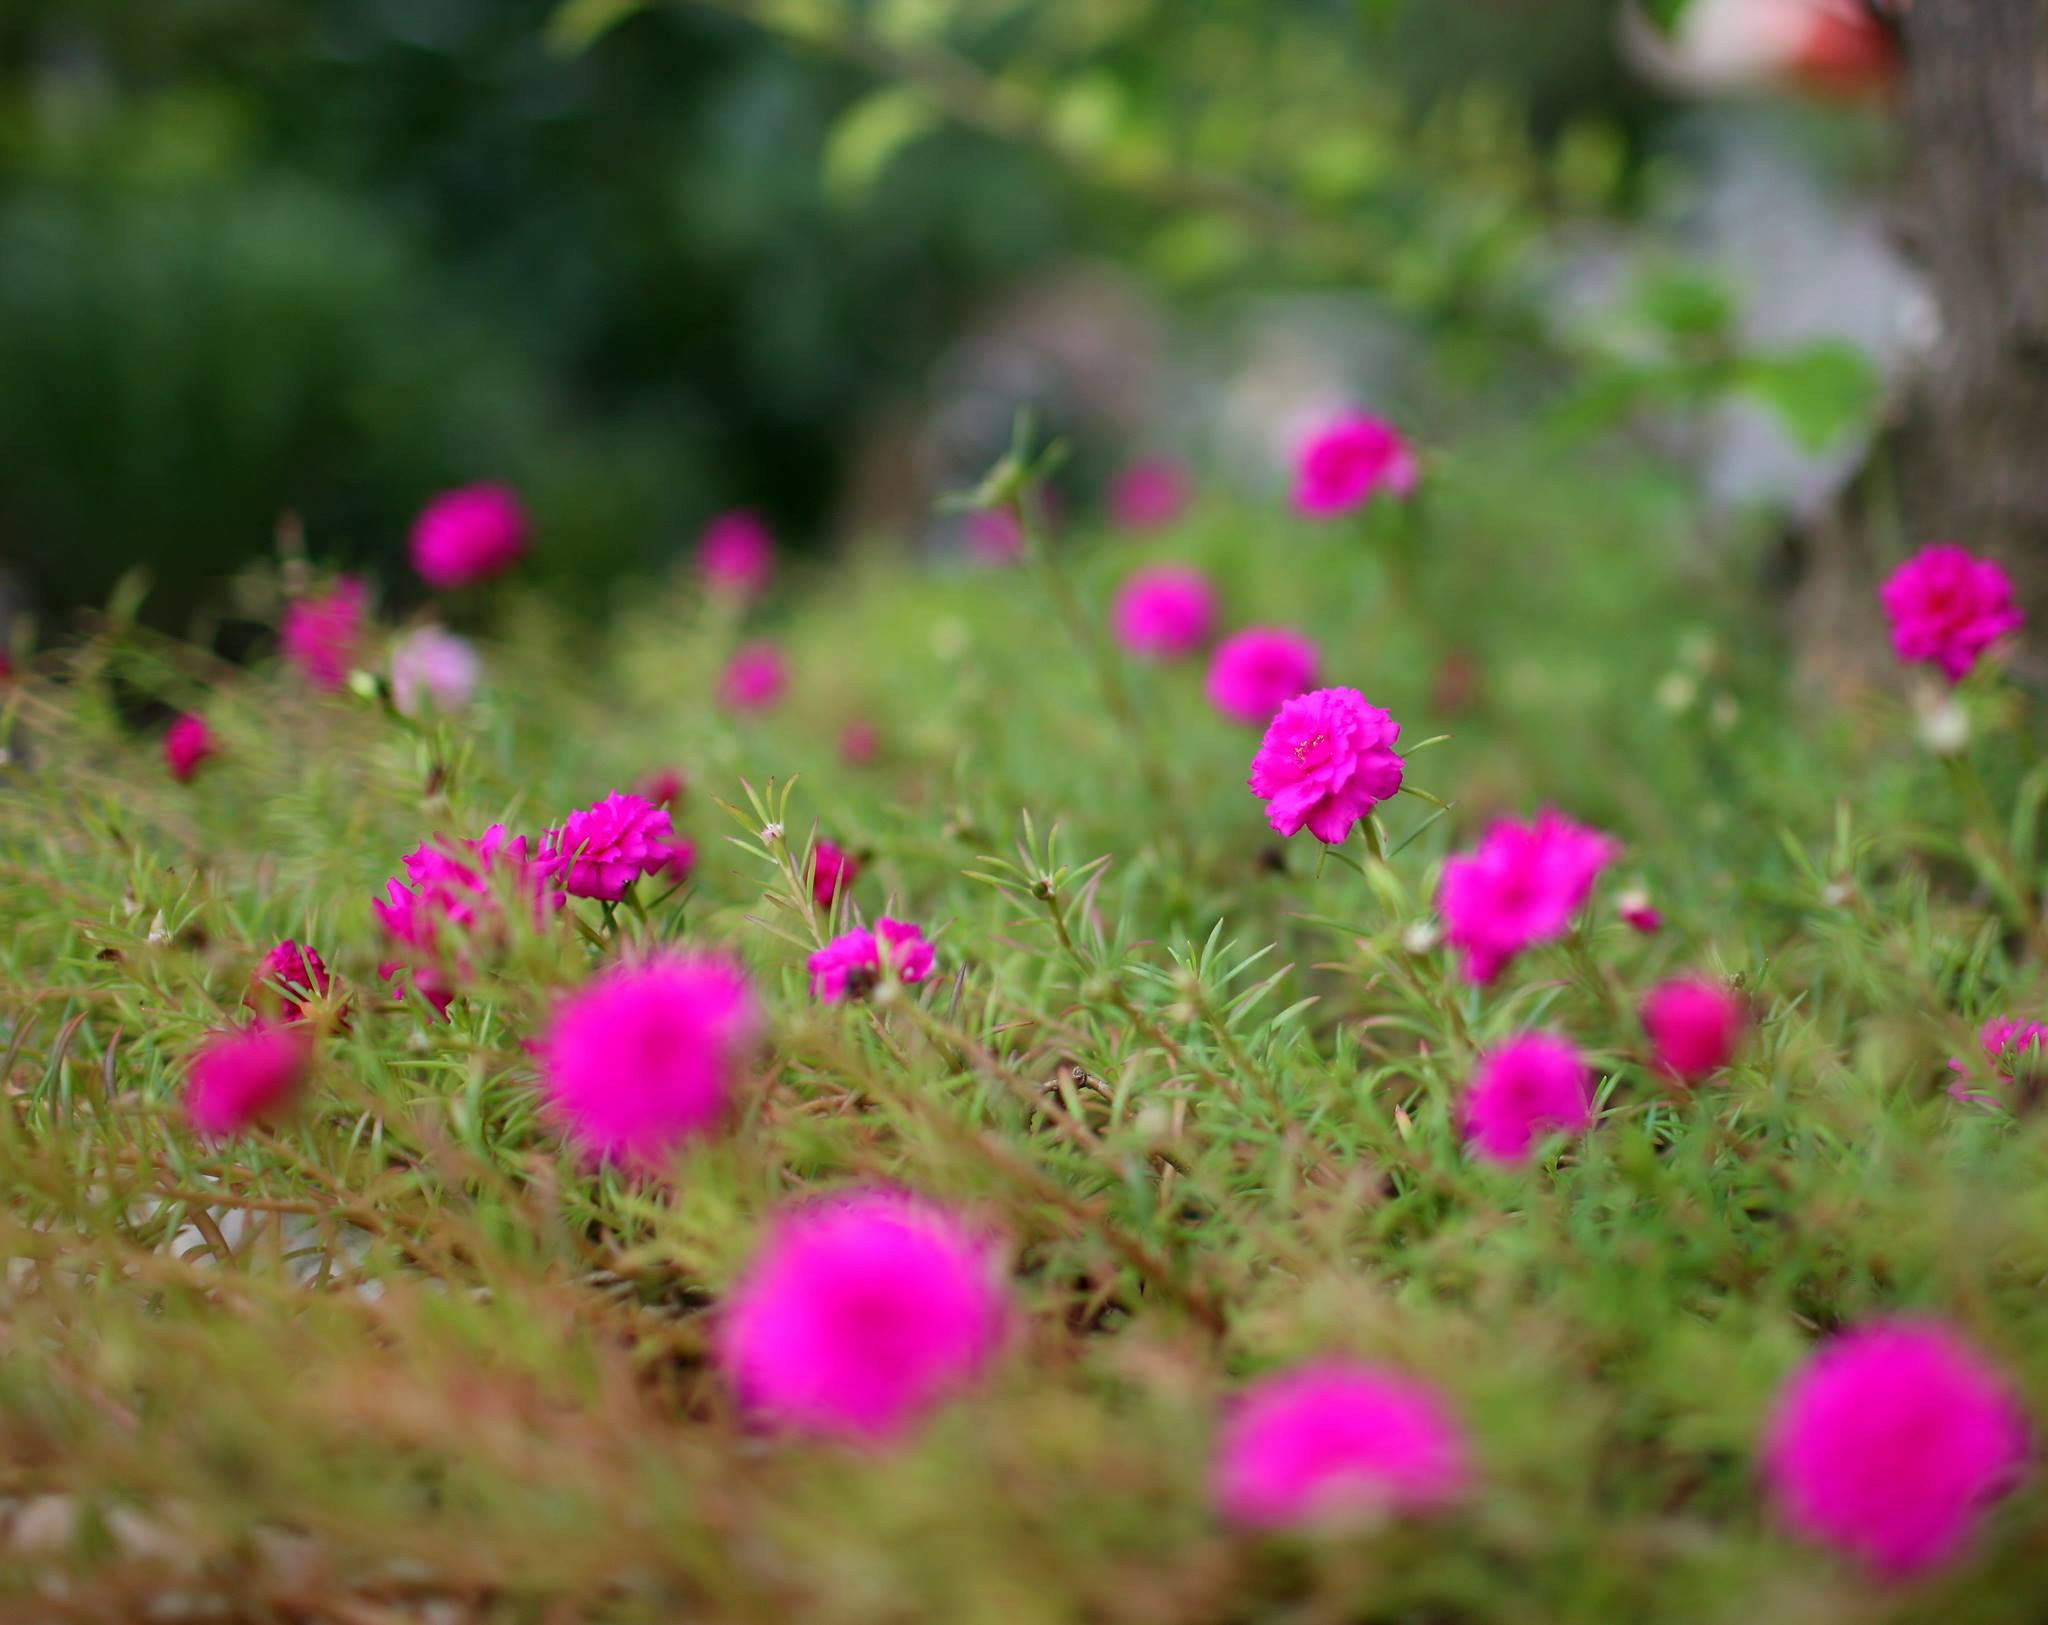 Cái màu hồng sáng của những đóa hoa mười giờ ngay bên thềm nhà luôn đem đến một cảm giác hân hoan. Ảnh: Lương Thanh Hải